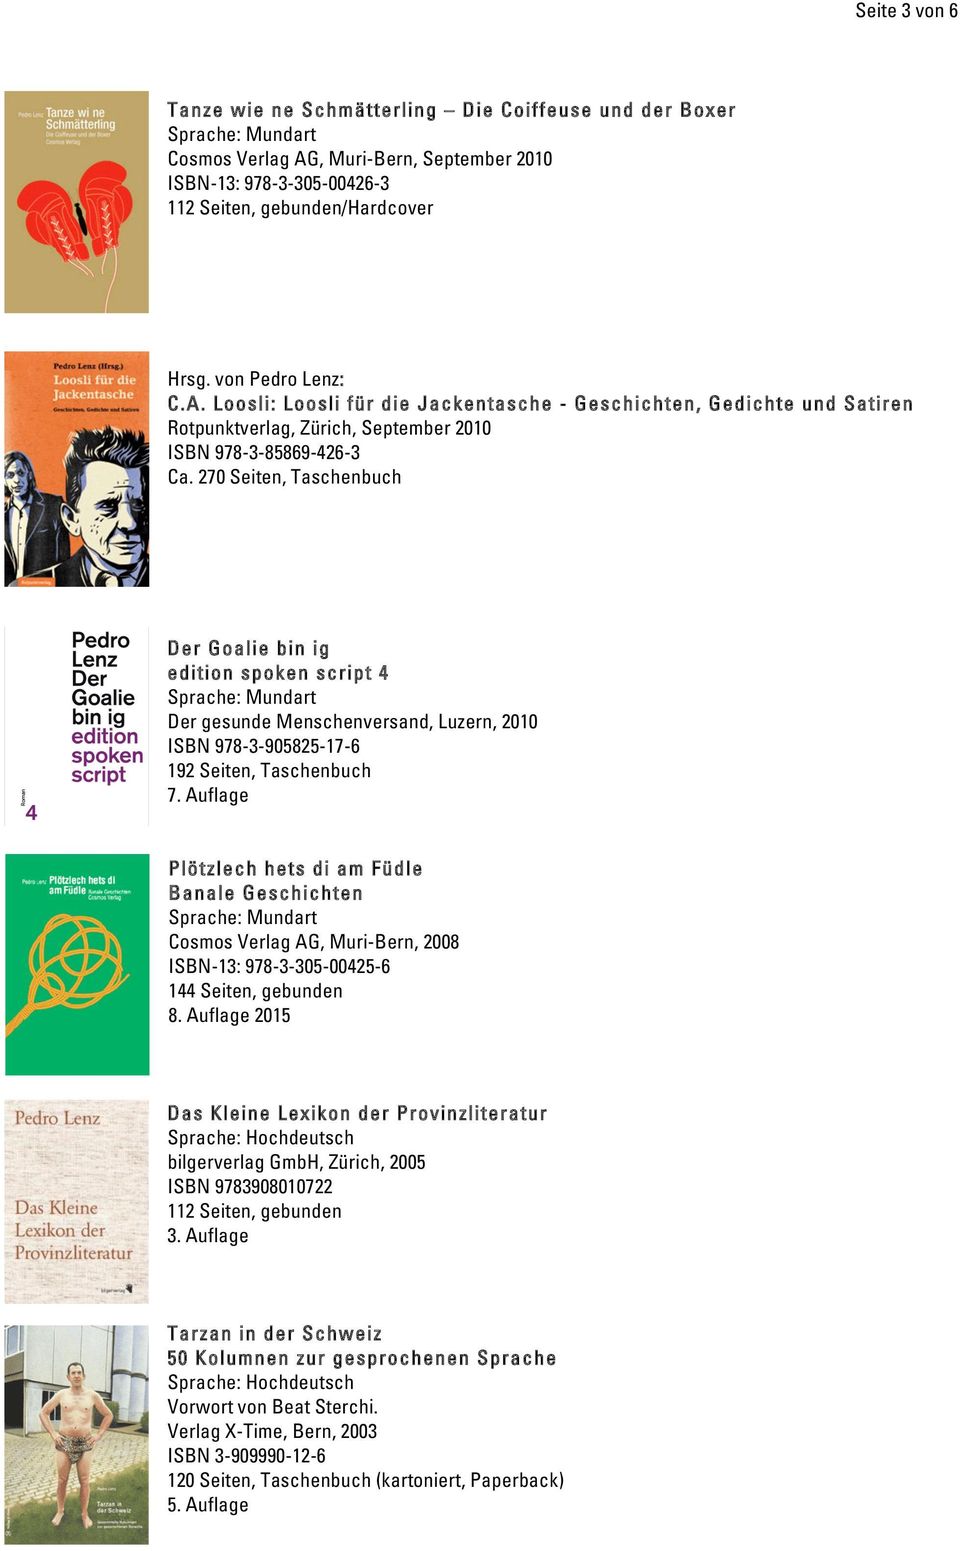 Loosli: Loosli für die Jackentasche - Geschichten, Gedichte und Satiren Rotpunktverlag, Zürich, September 2010 ISBN 978-3-85869-426-3 Ca.